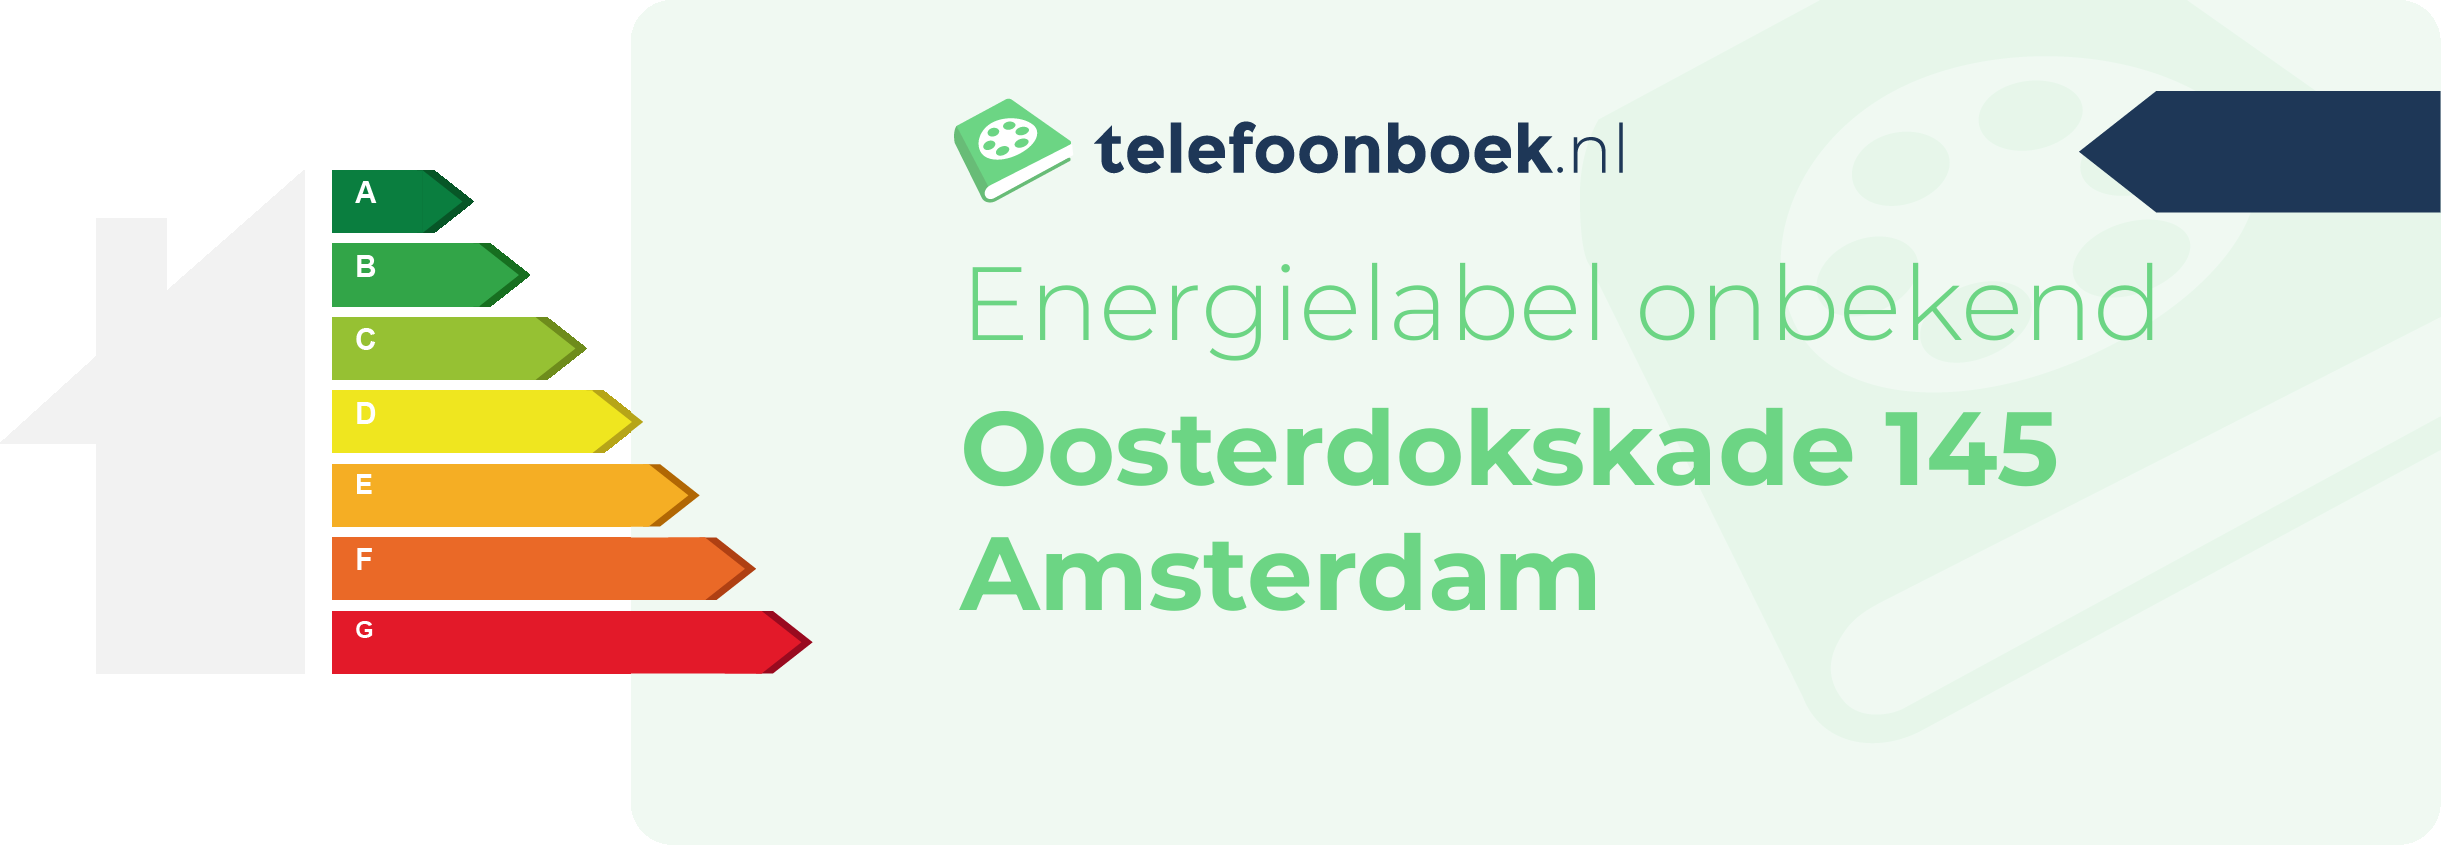 Energielabel Oosterdokskade 145 Amsterdam